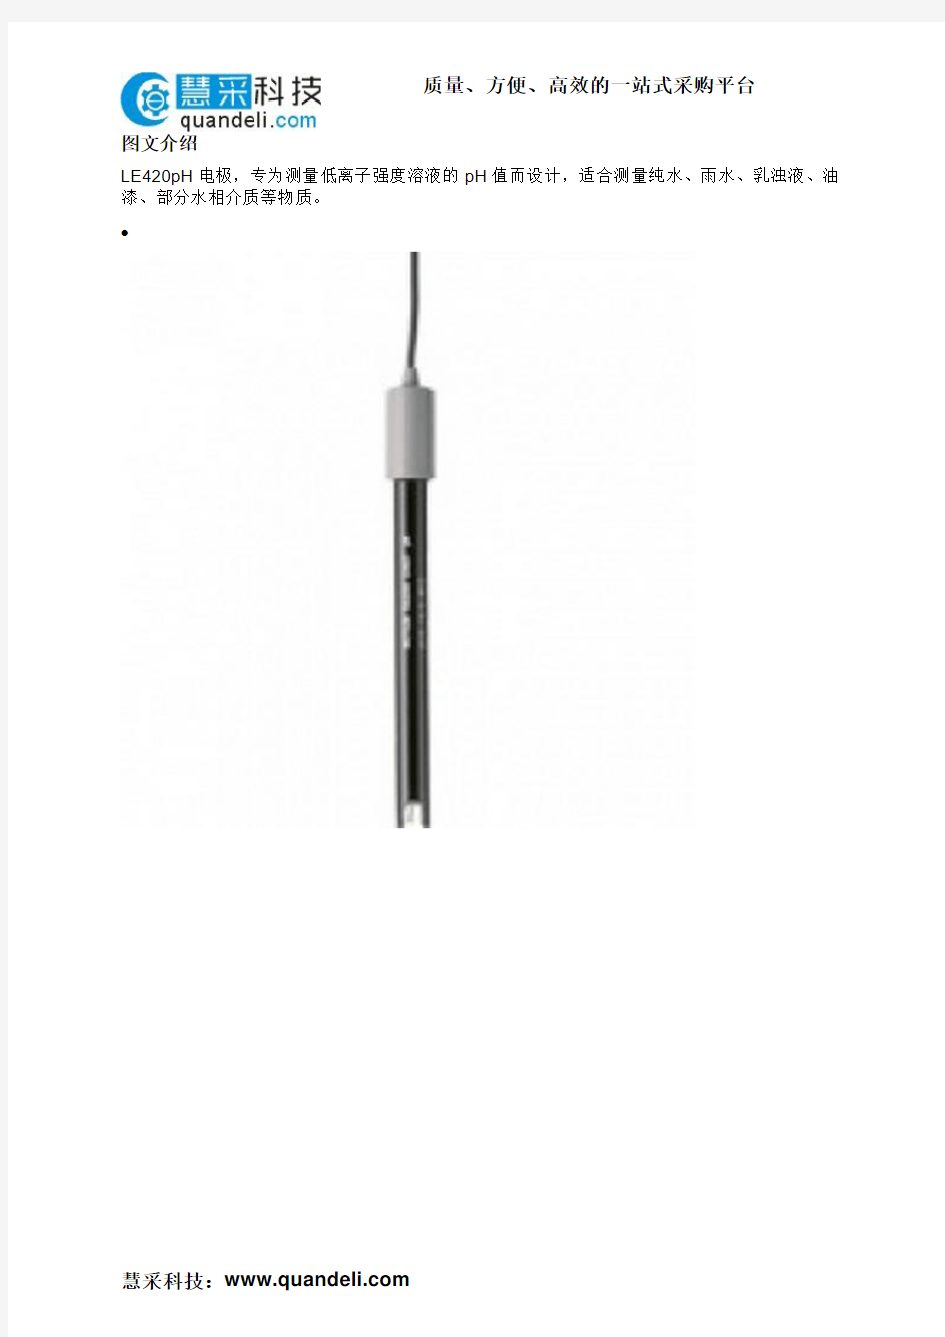 电极,梅特勒 低离子浓度样品pH电极,0-14pH 0-80℃,LE 420